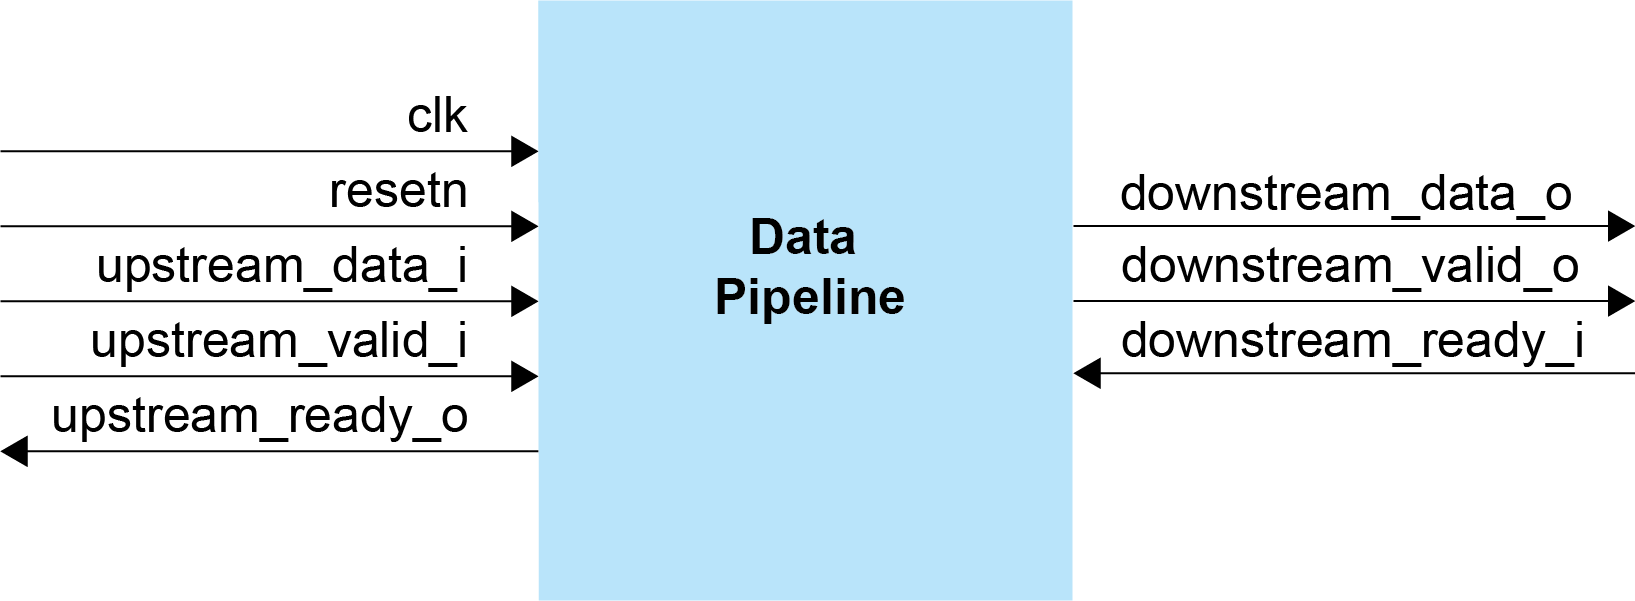 Data Pipeline Block Diagram